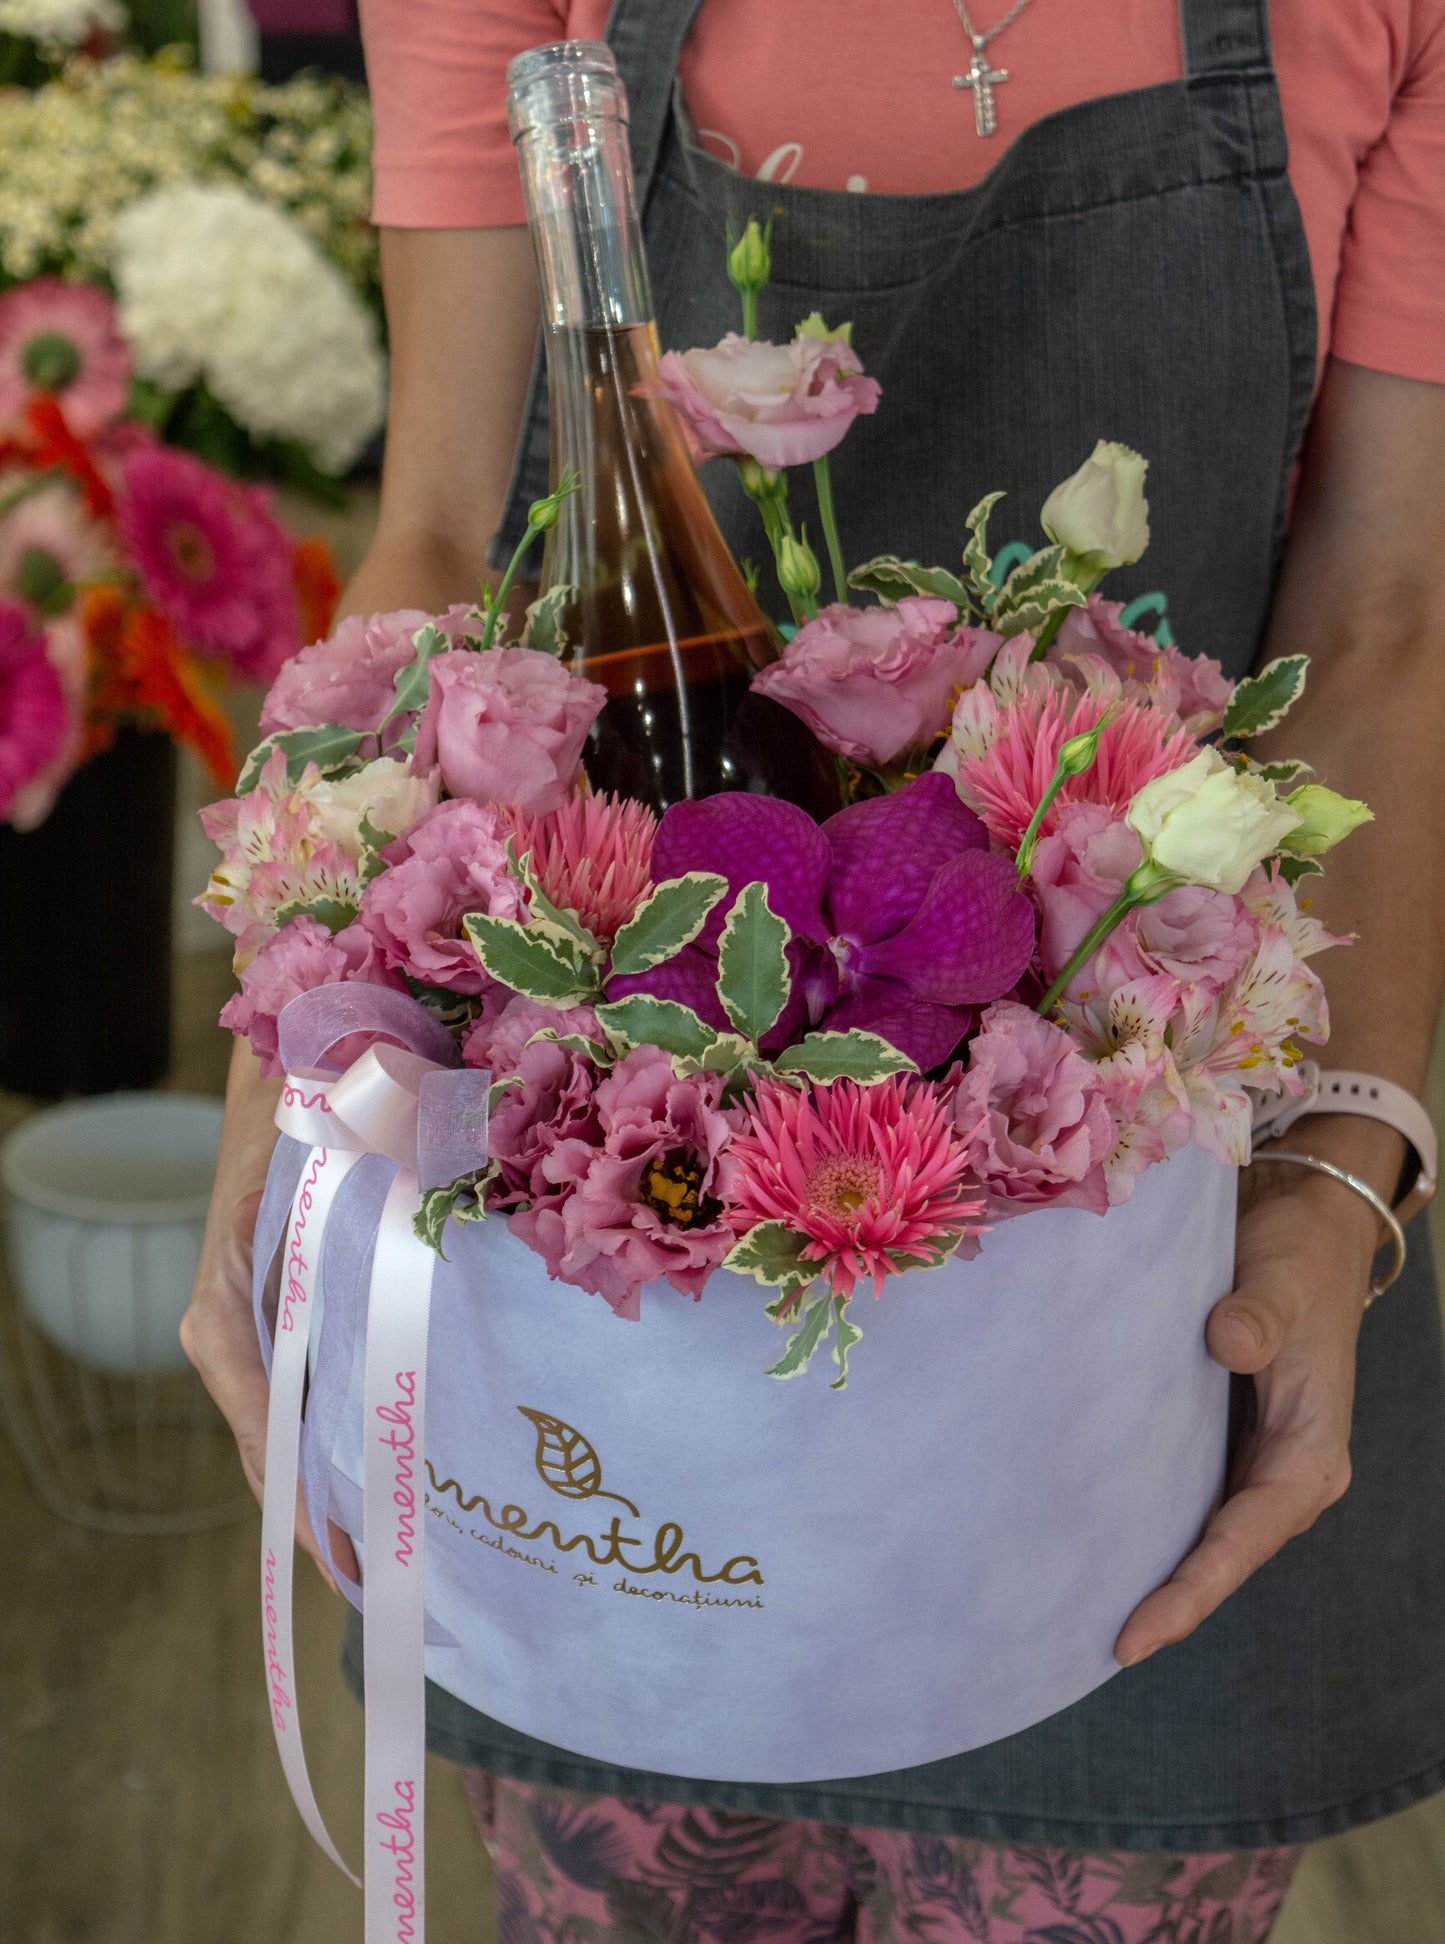 Fascinație roz: imaginea unei orhidee Vanda din cutia noastră de flori, un gest elegant și rafinat pentru persoanele dragi.